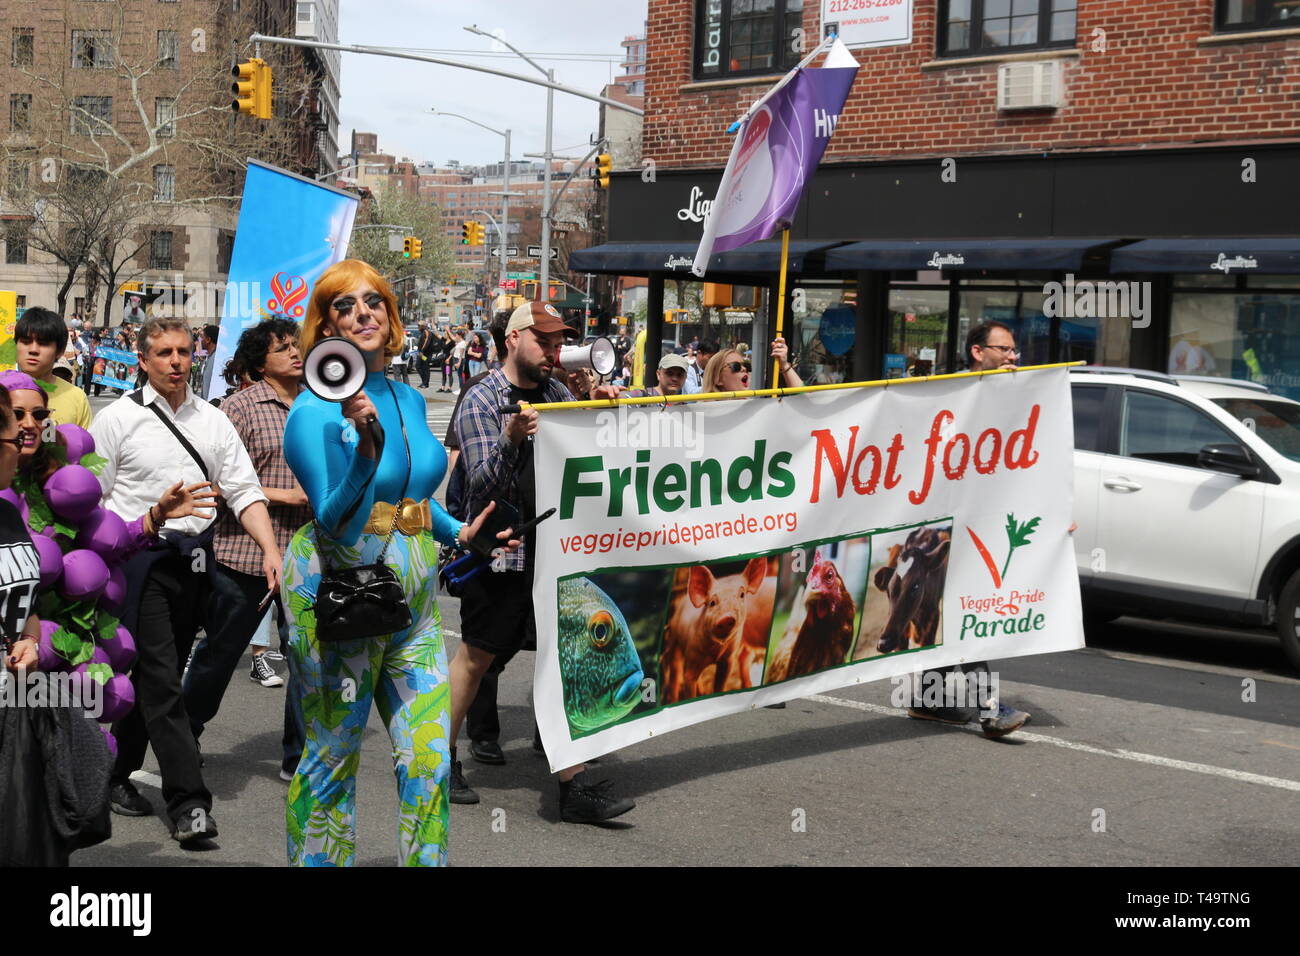 Leute gesehen, die ein Banner zu anderen veganen während der jährlichen Veggie Pride Parade zu fördern. Die Parade feiert Veganismus und Übungen die erste änderung Rechte derjenigen, die Gewalt gegen andere Tiere ablehnen. Stockfoto